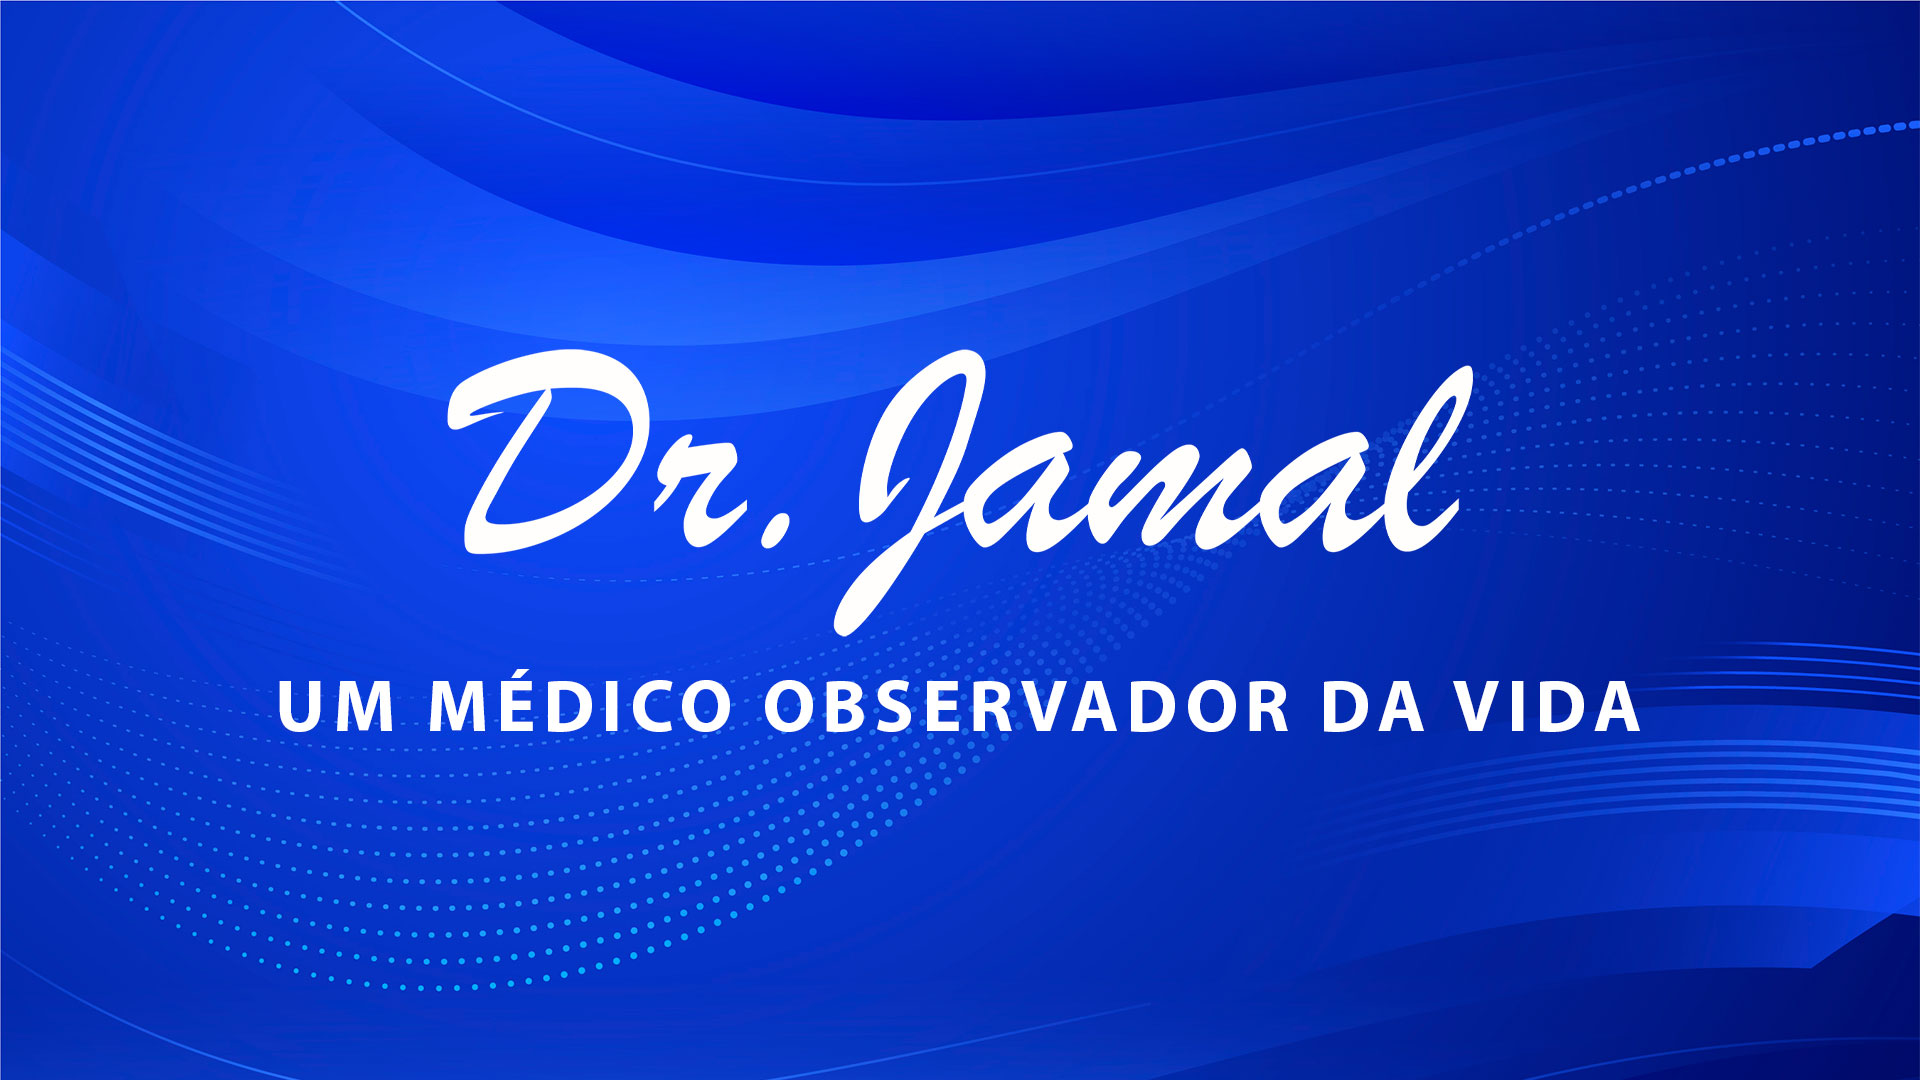 Um médico observador da vida – Dr. Jamal